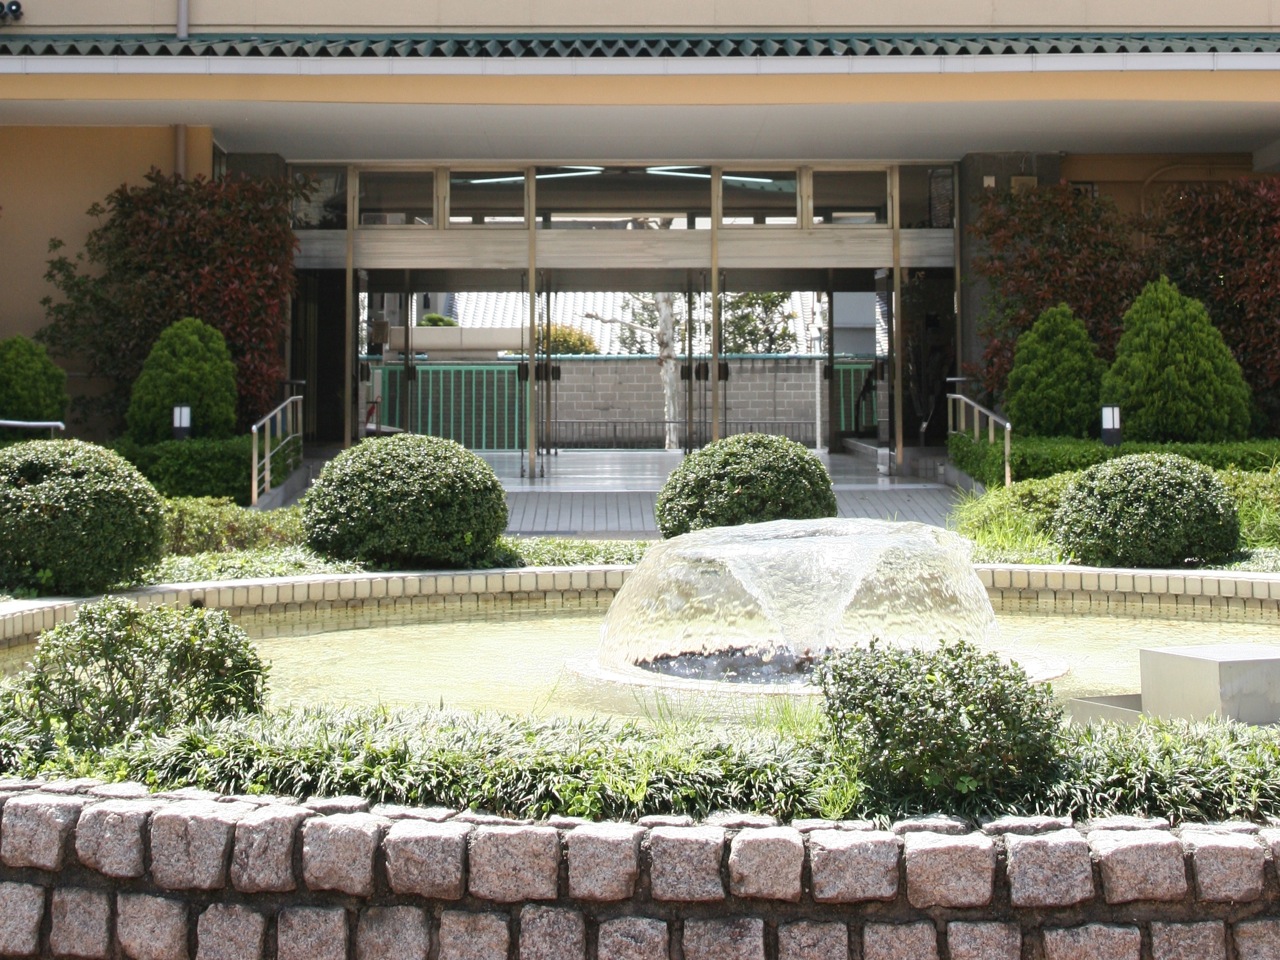 京都外国語専門学校のオープンキャンパス